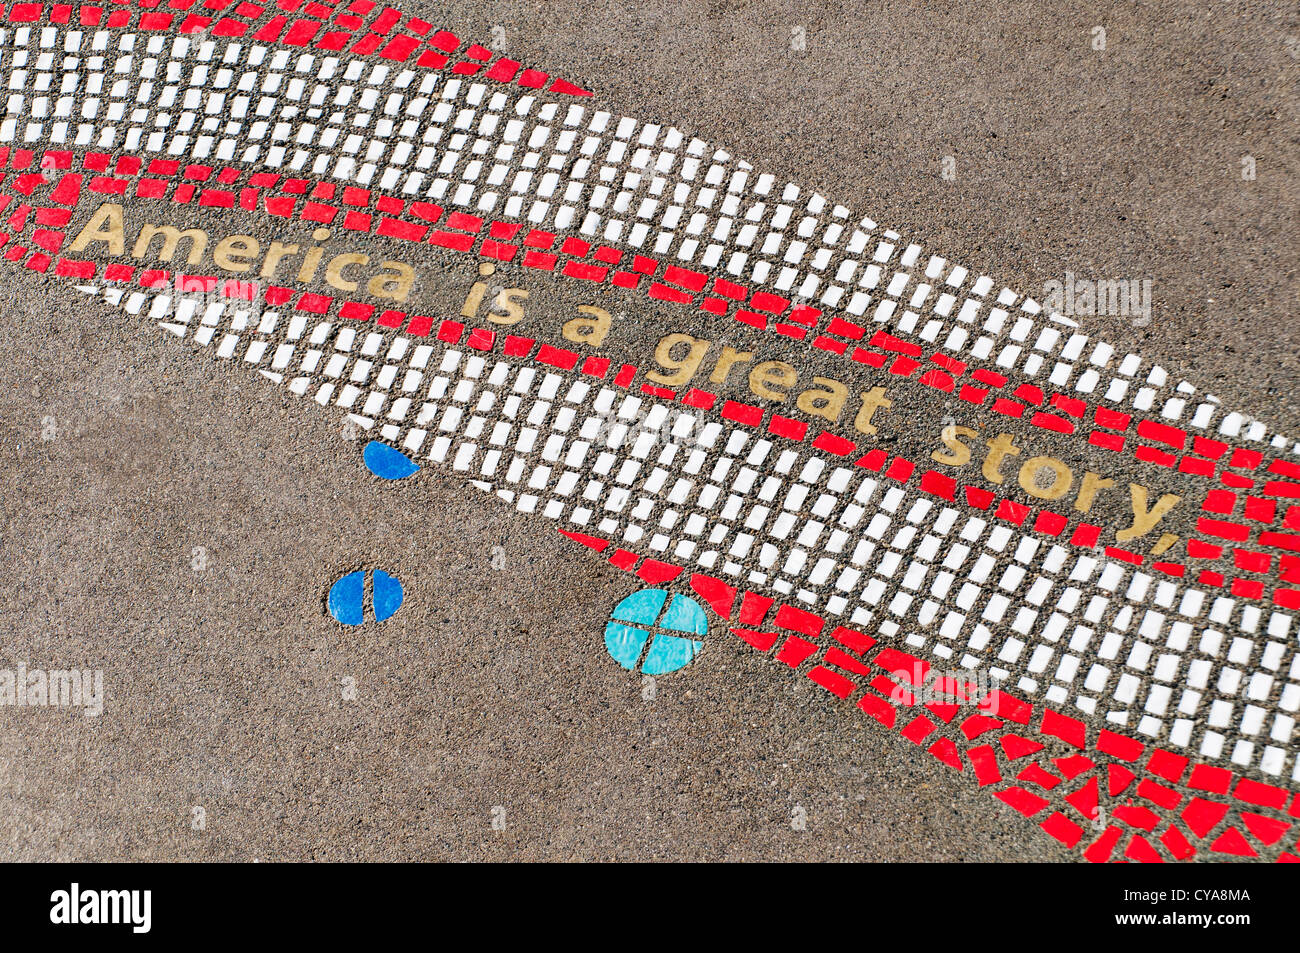 Kreative und bunte patriotischen Mosaik auf dem Boden an der East Bay öffentlichen Plaza in Olympia, Washington. Stockfoto